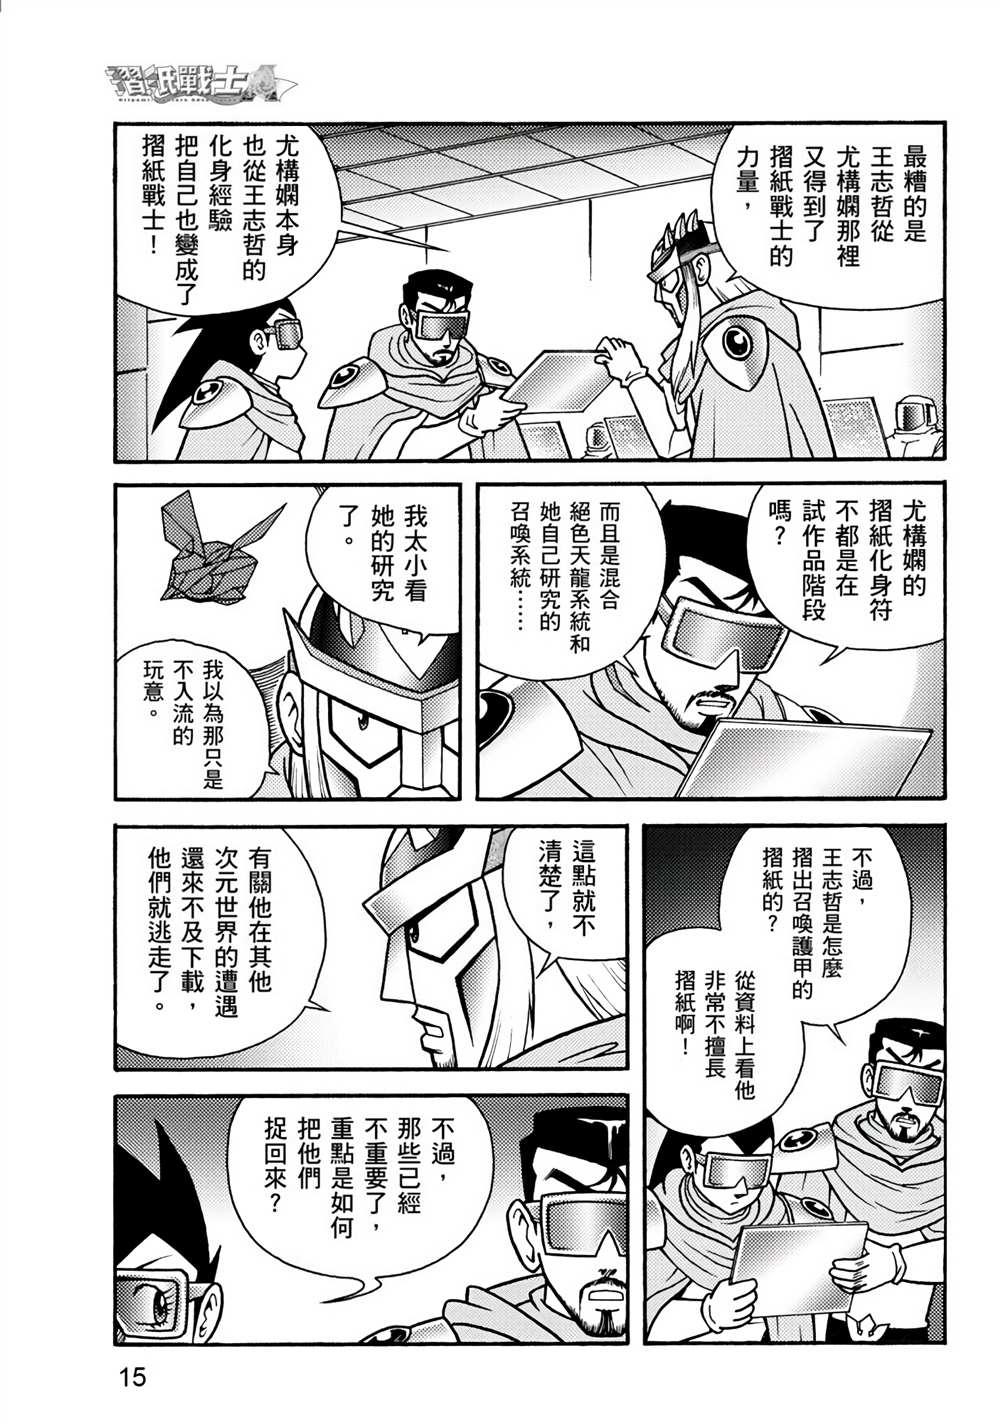 折纸战士A漫画,第2卷5图